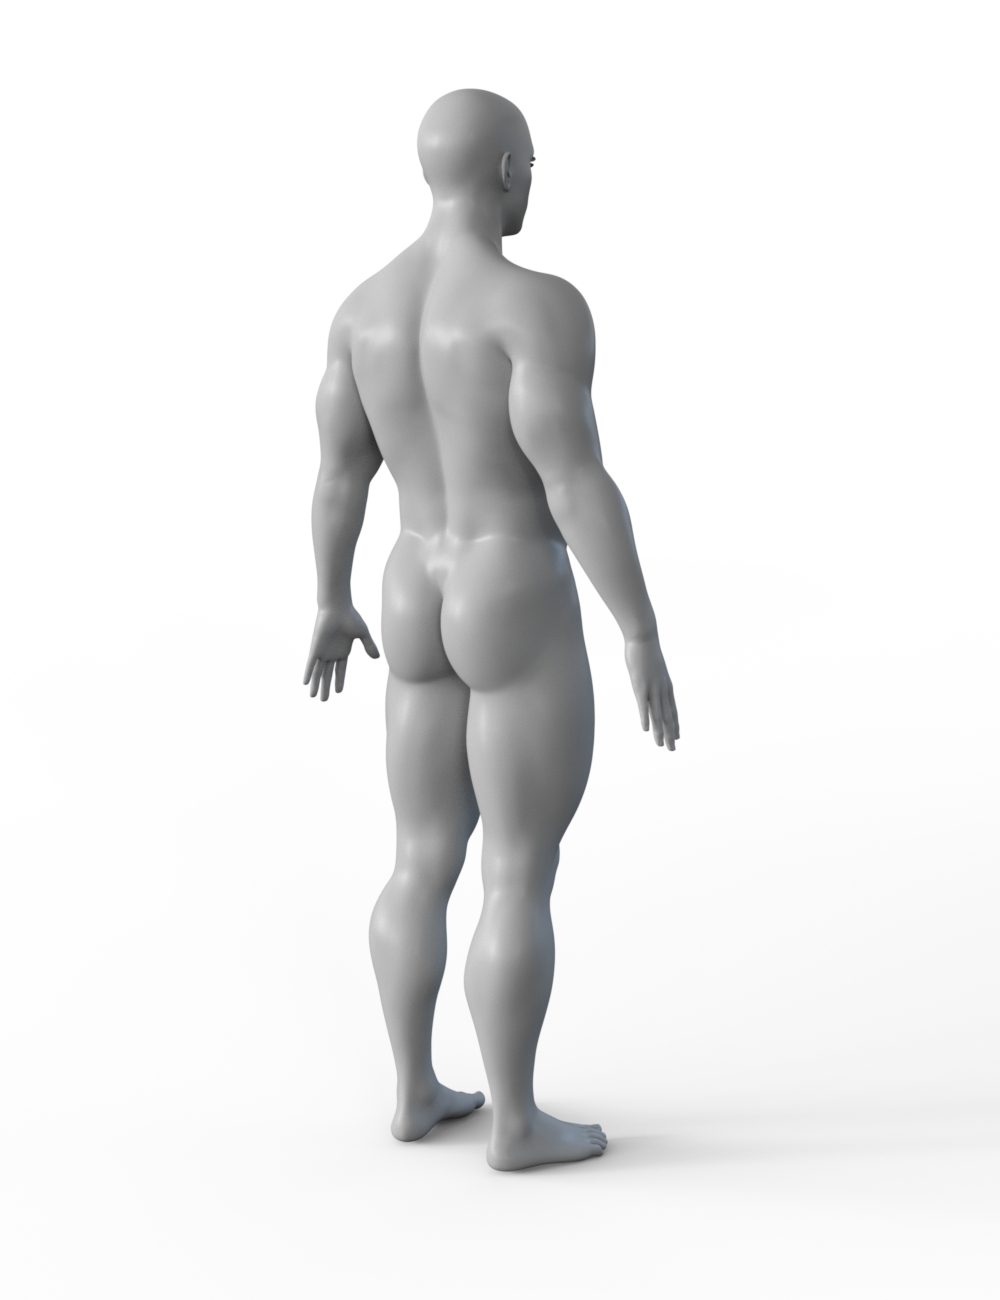 FBX- Base Male Floor Trader by: Paleo, 3D Models by Daz 3D